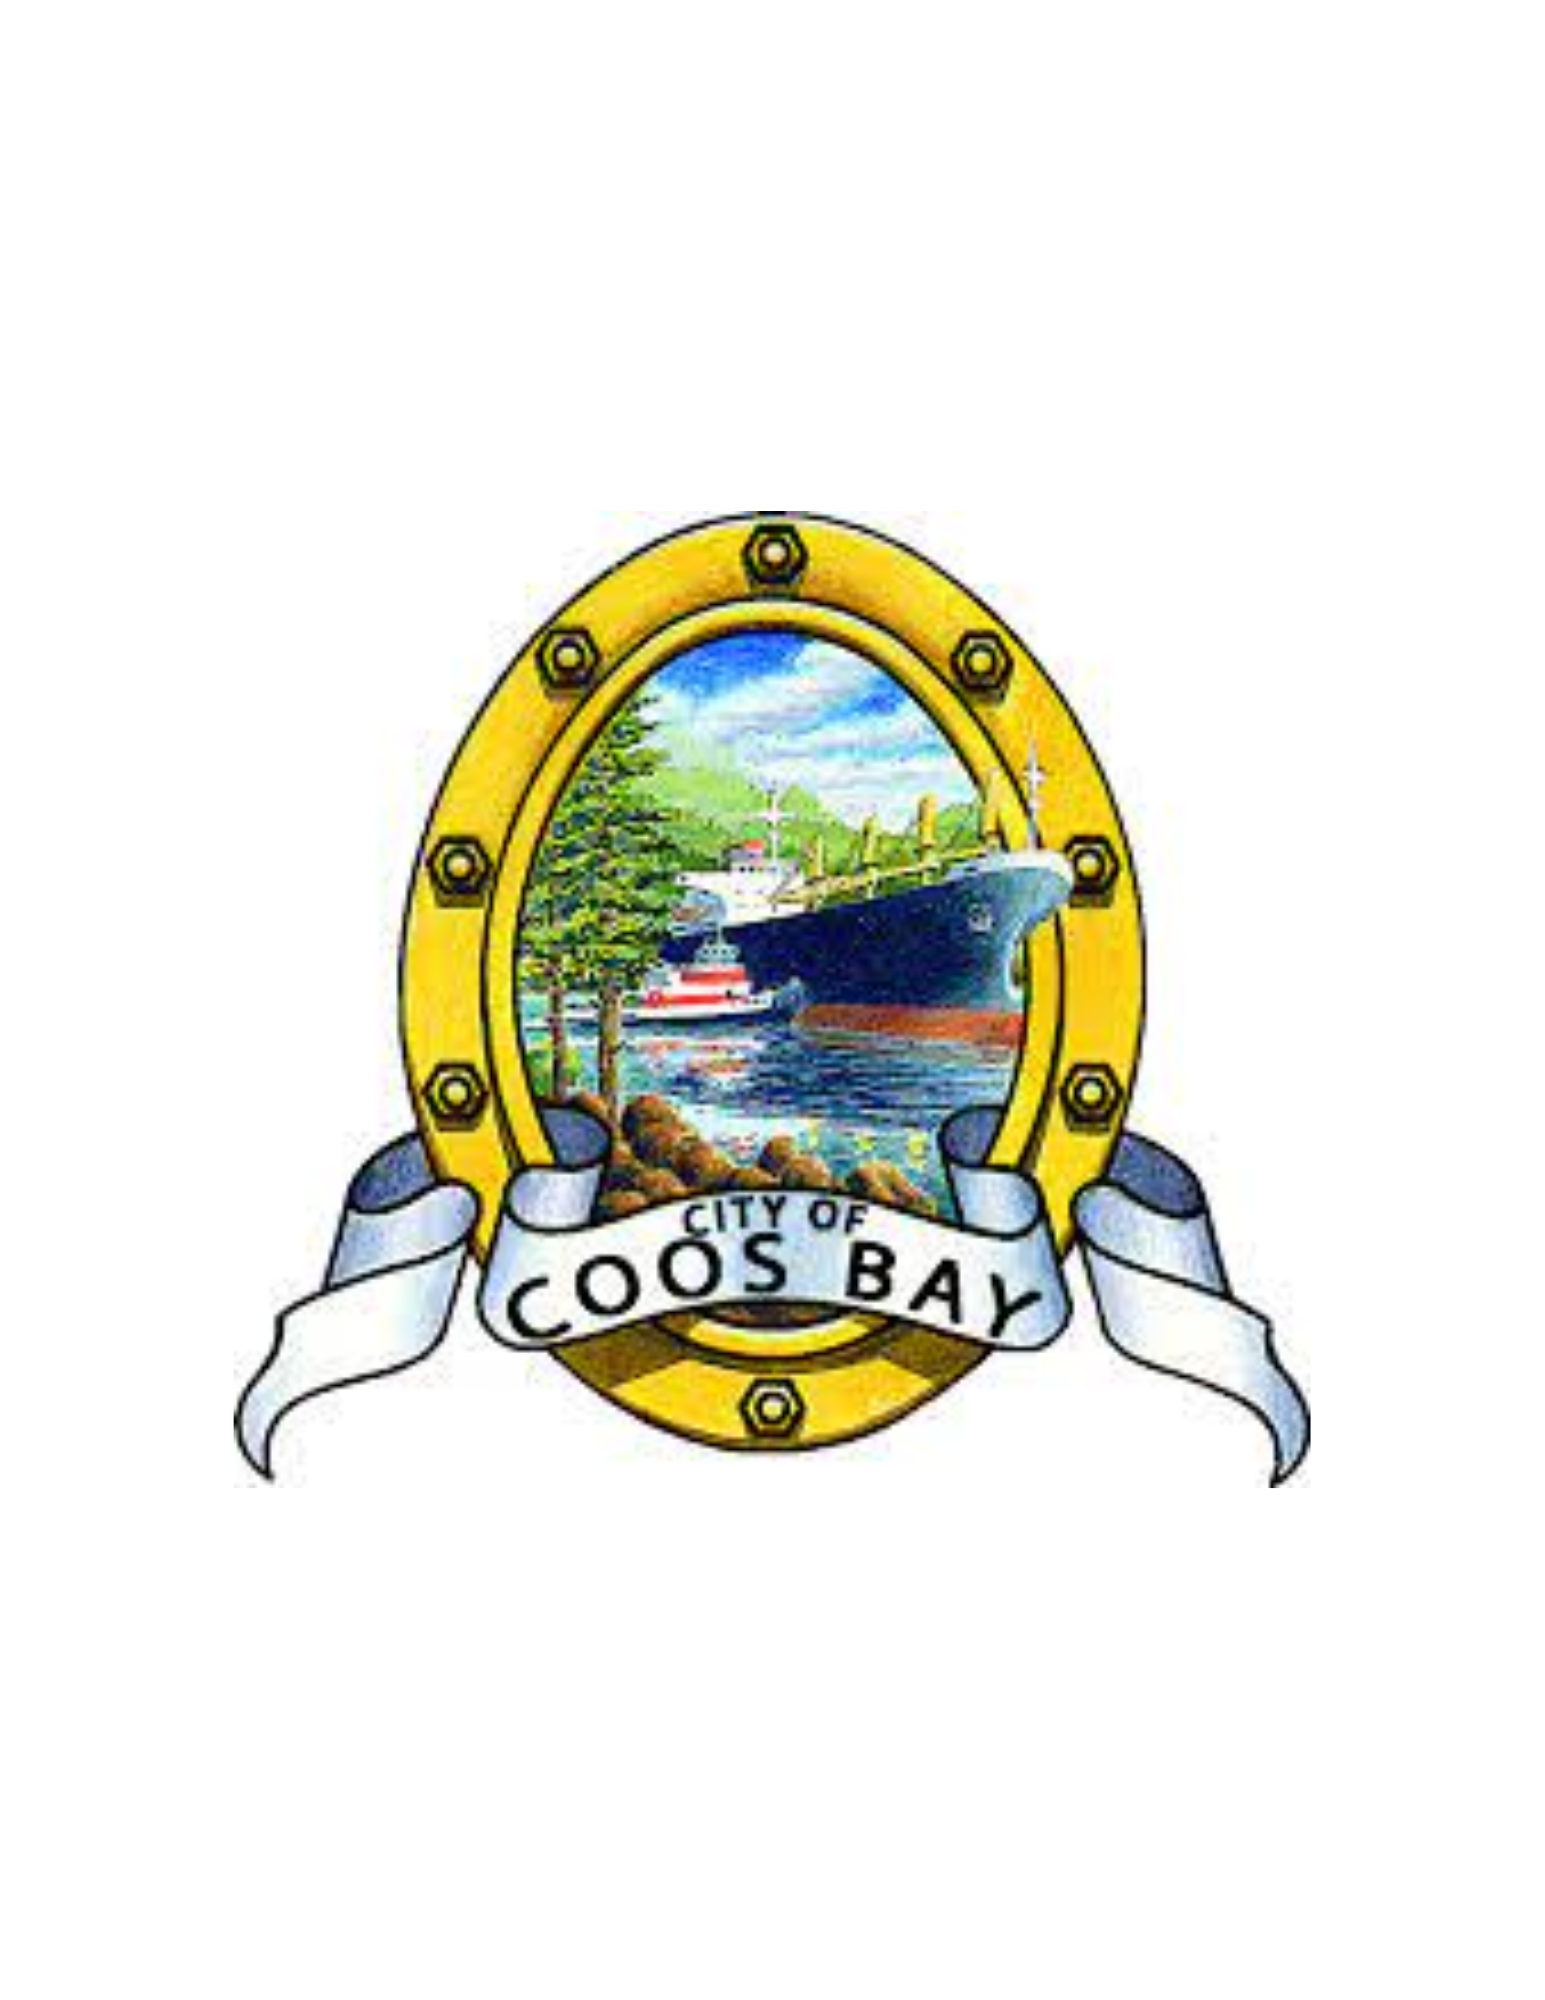 Coos Bay